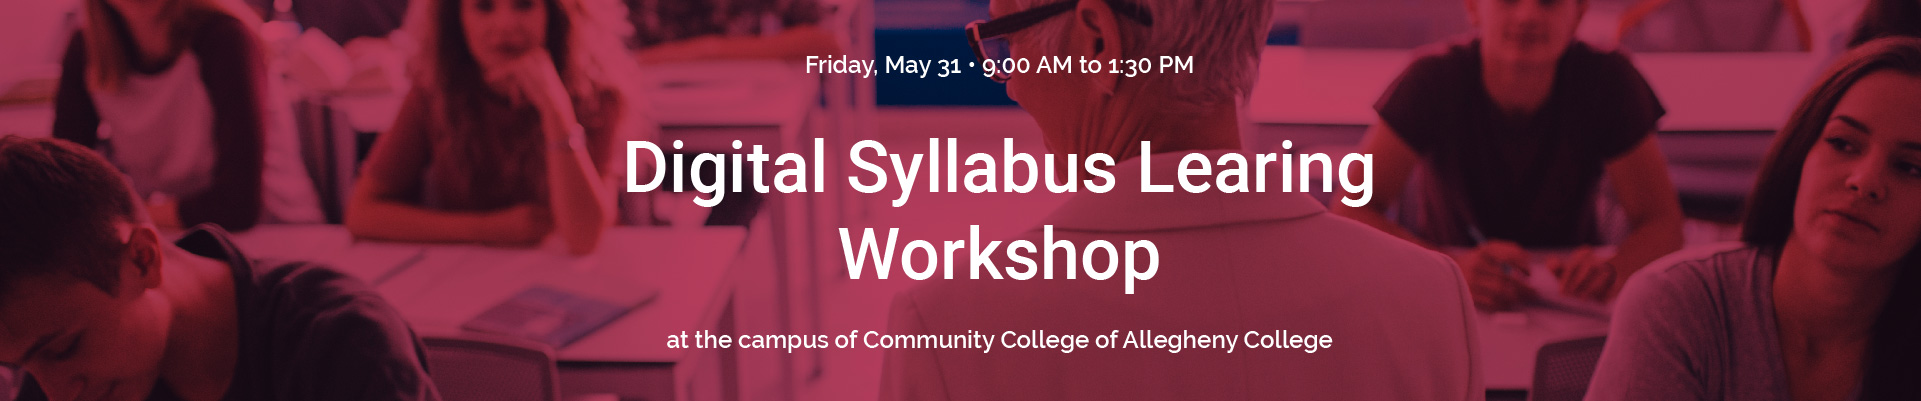 Digital Syllabus Learning Workshop